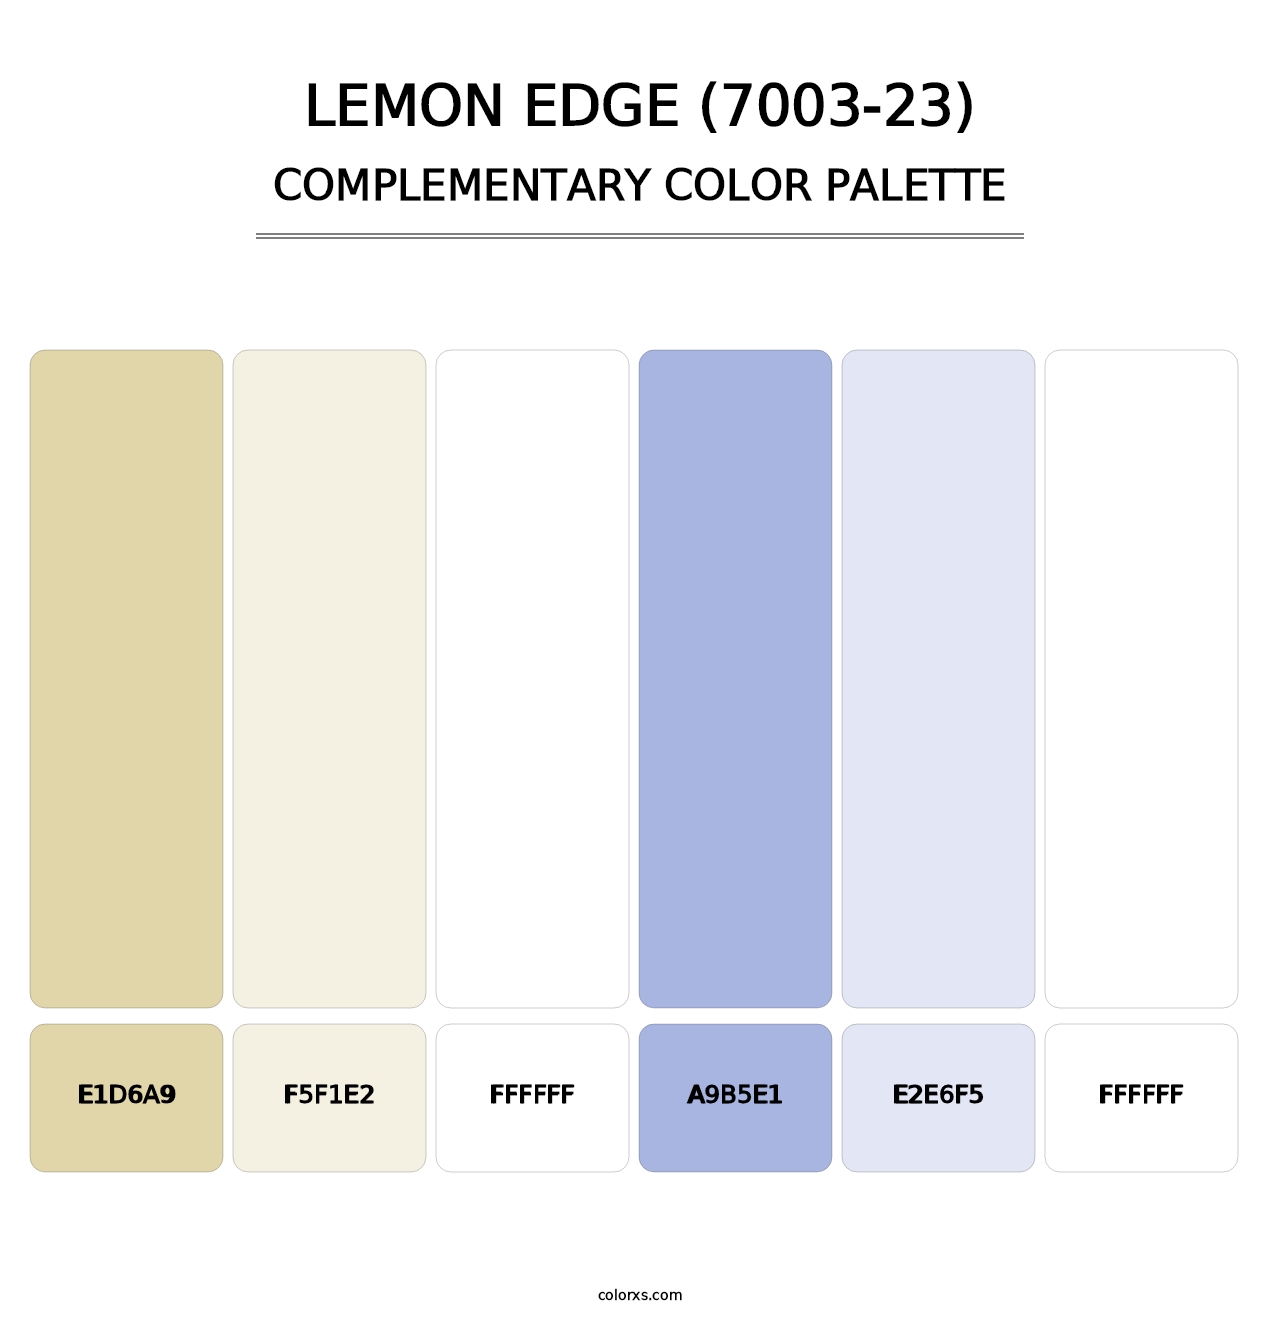 Lemon Edge (7003-23) - Complementary Color Palette